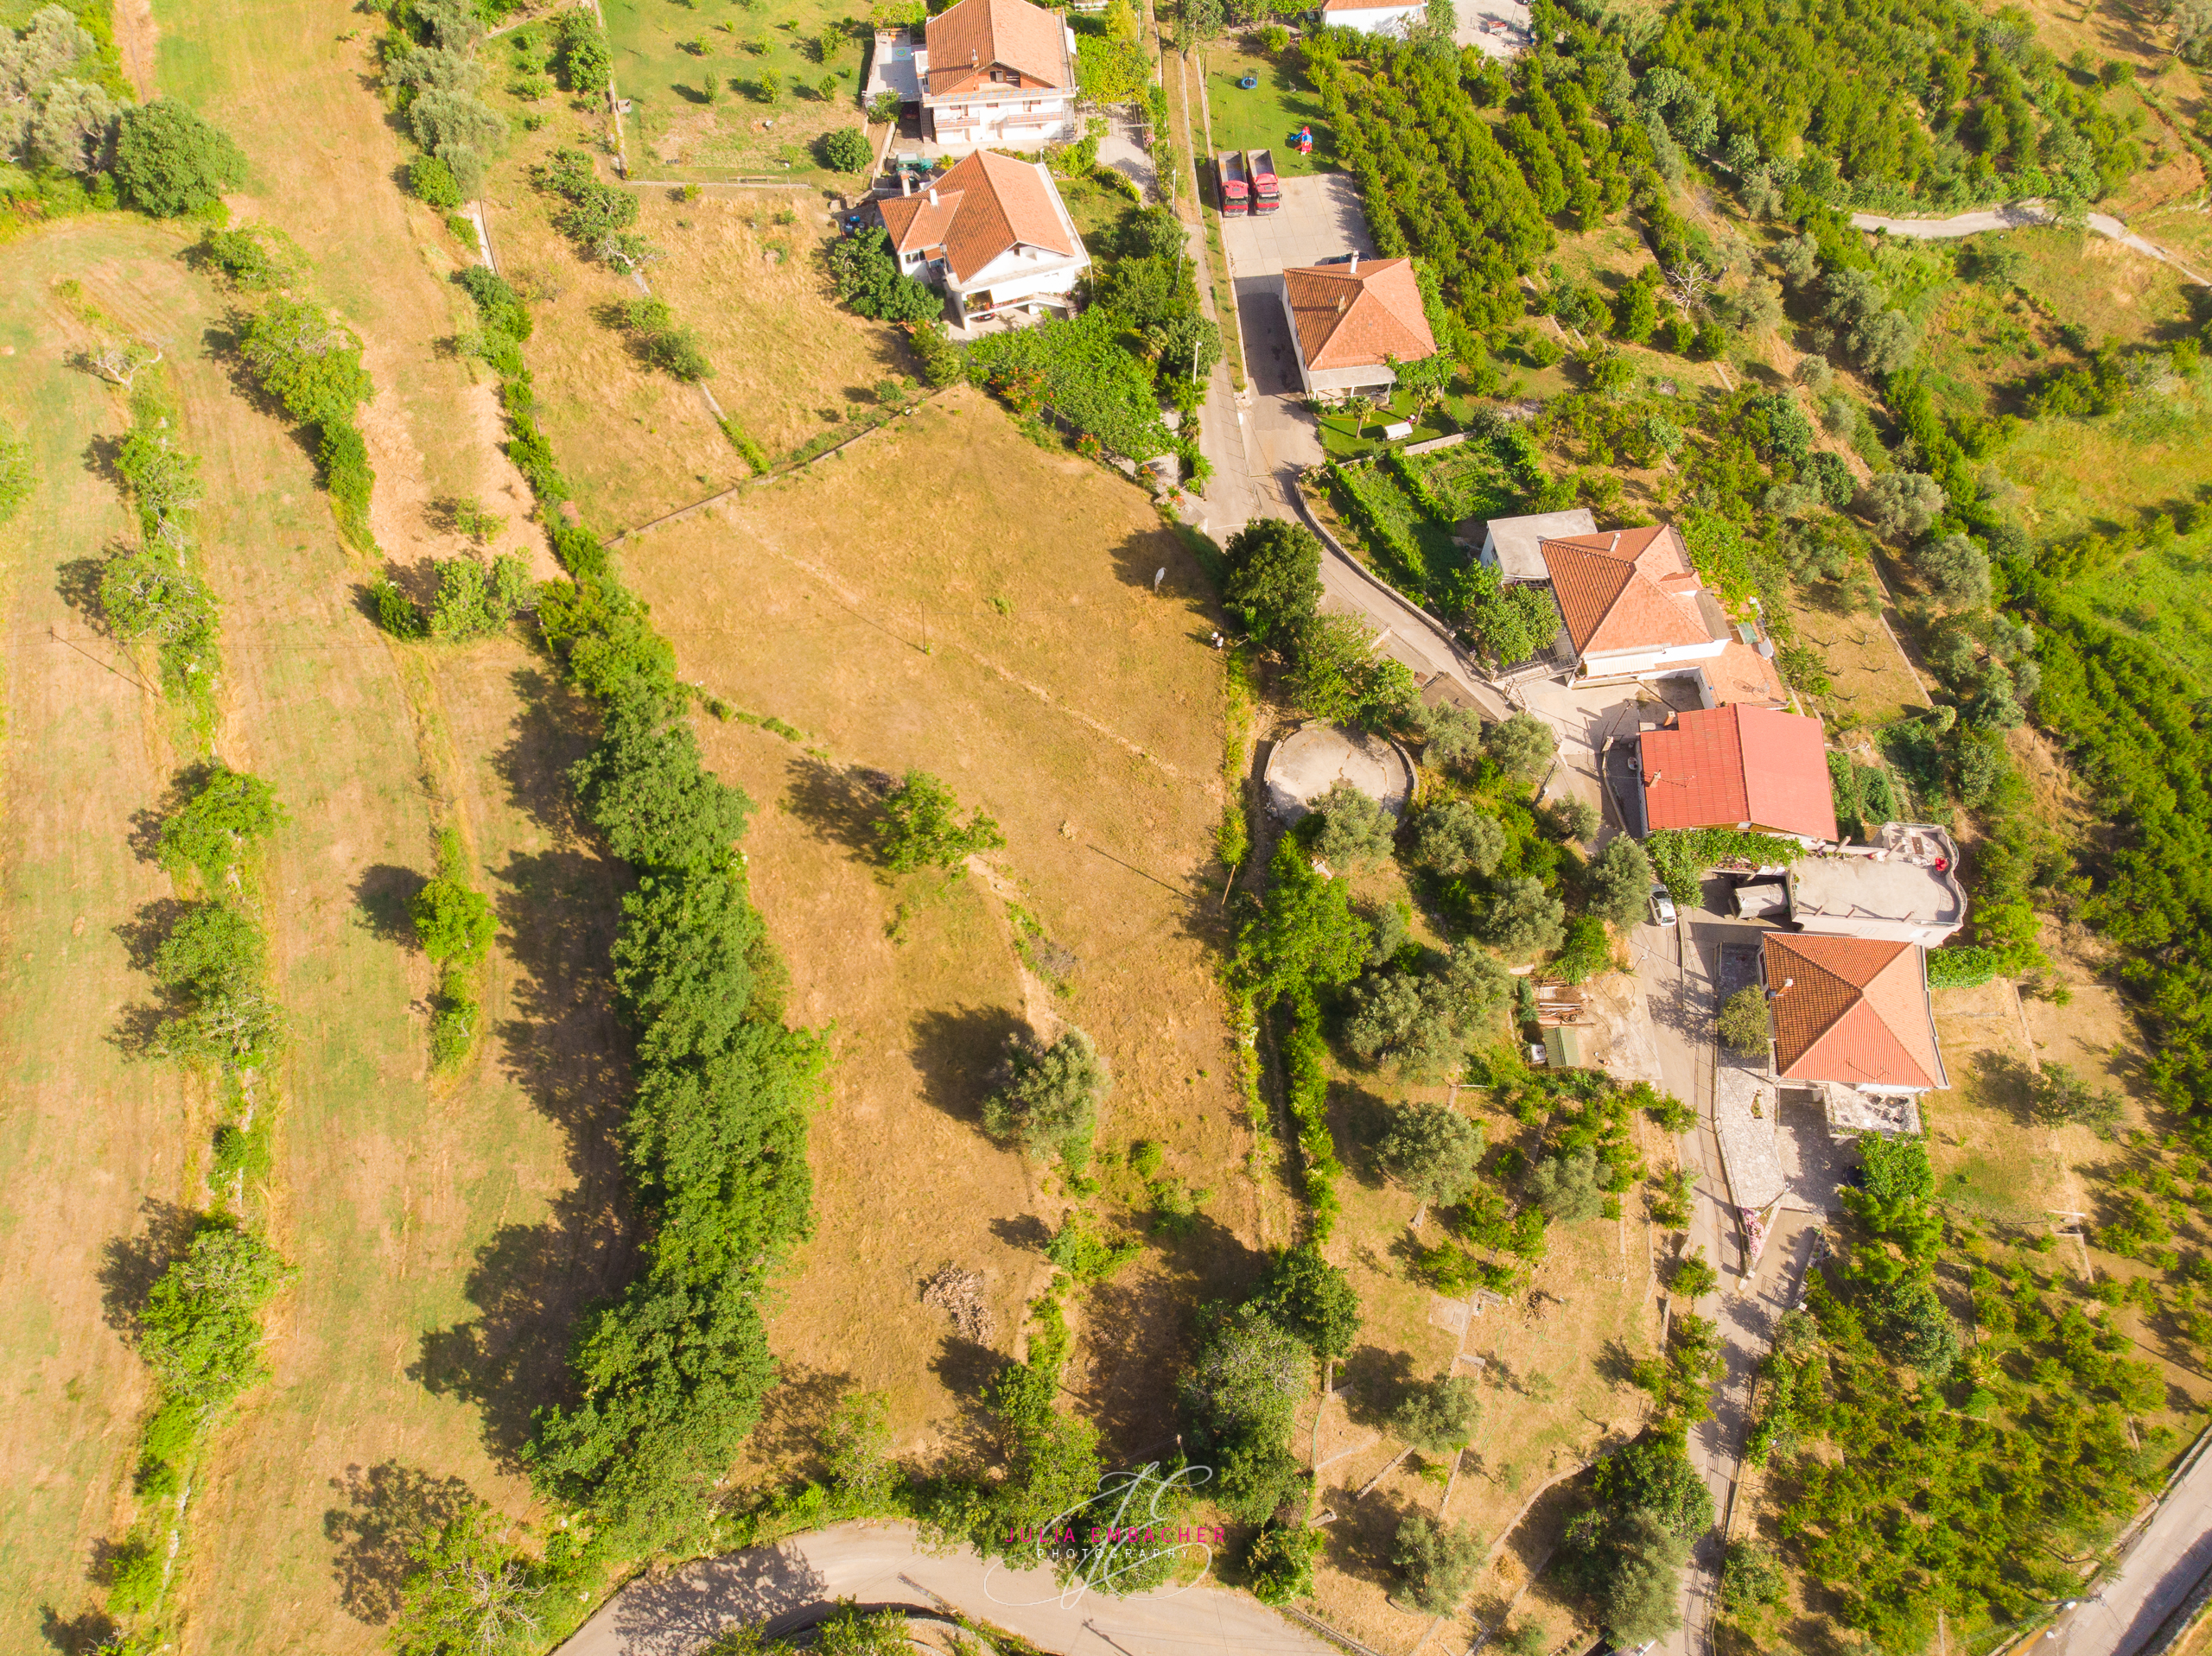 Immo Monte Immobilien in Montenegro Grundstück Dobra Voda B1 zum Verkauf an der Adriaküste Montenegros